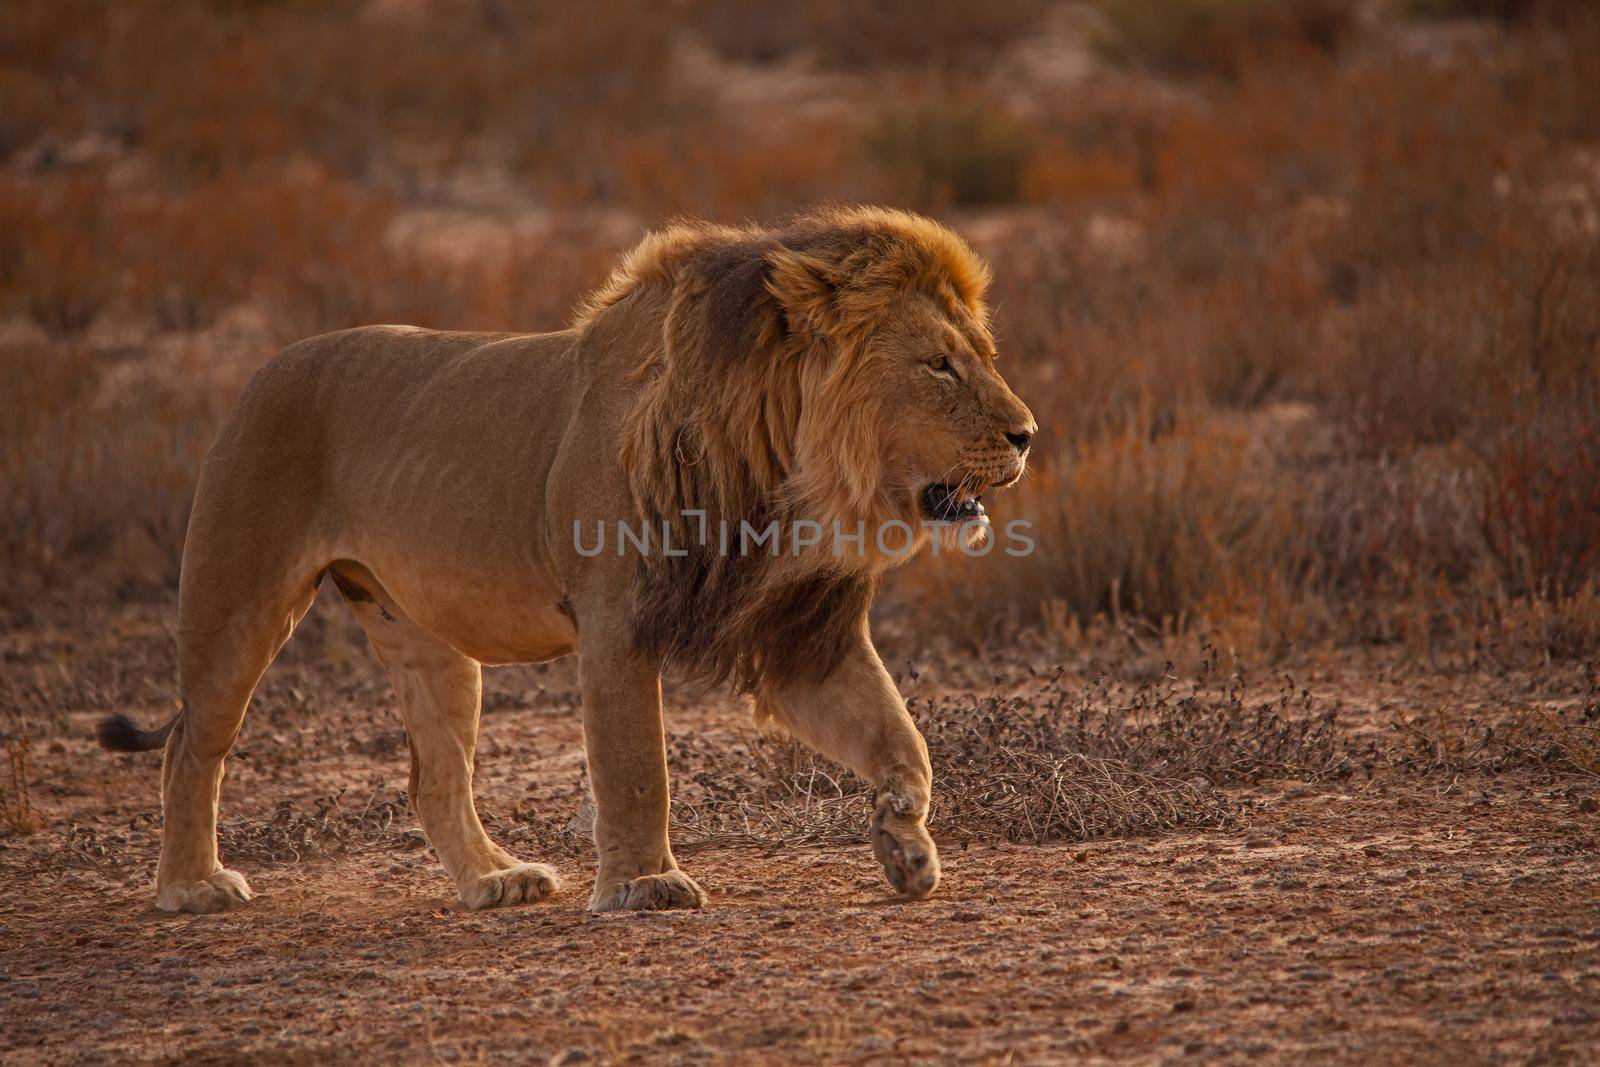 Kalahari Lion (Panthera leo) 5228 by kobus_peche